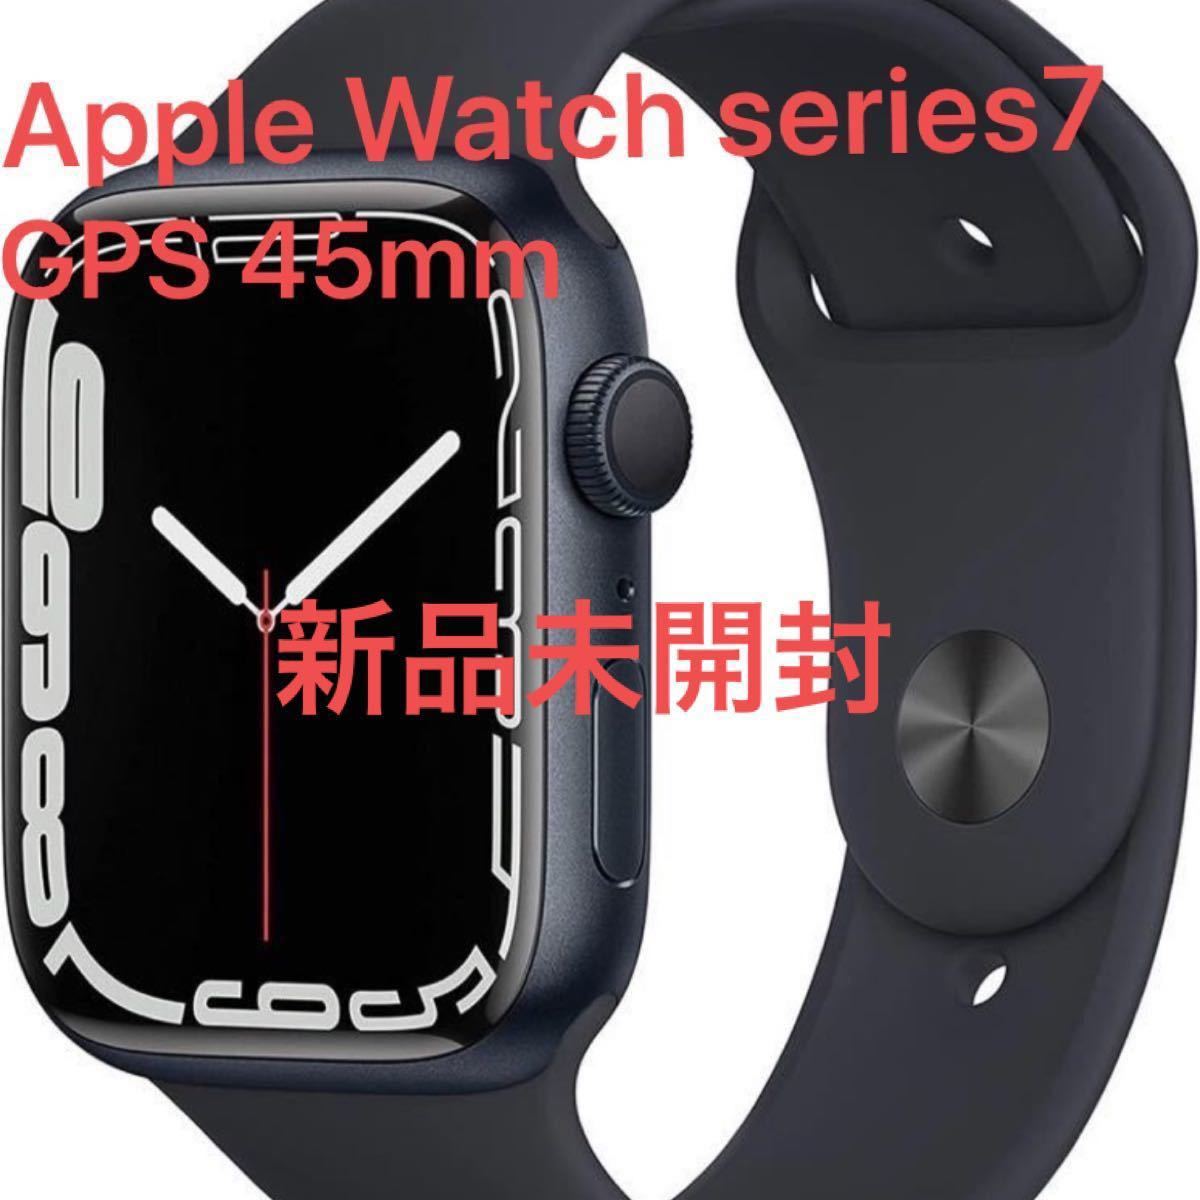 迅速な対応で商品をお届け致します Apple Watch Series 7 グラファイト